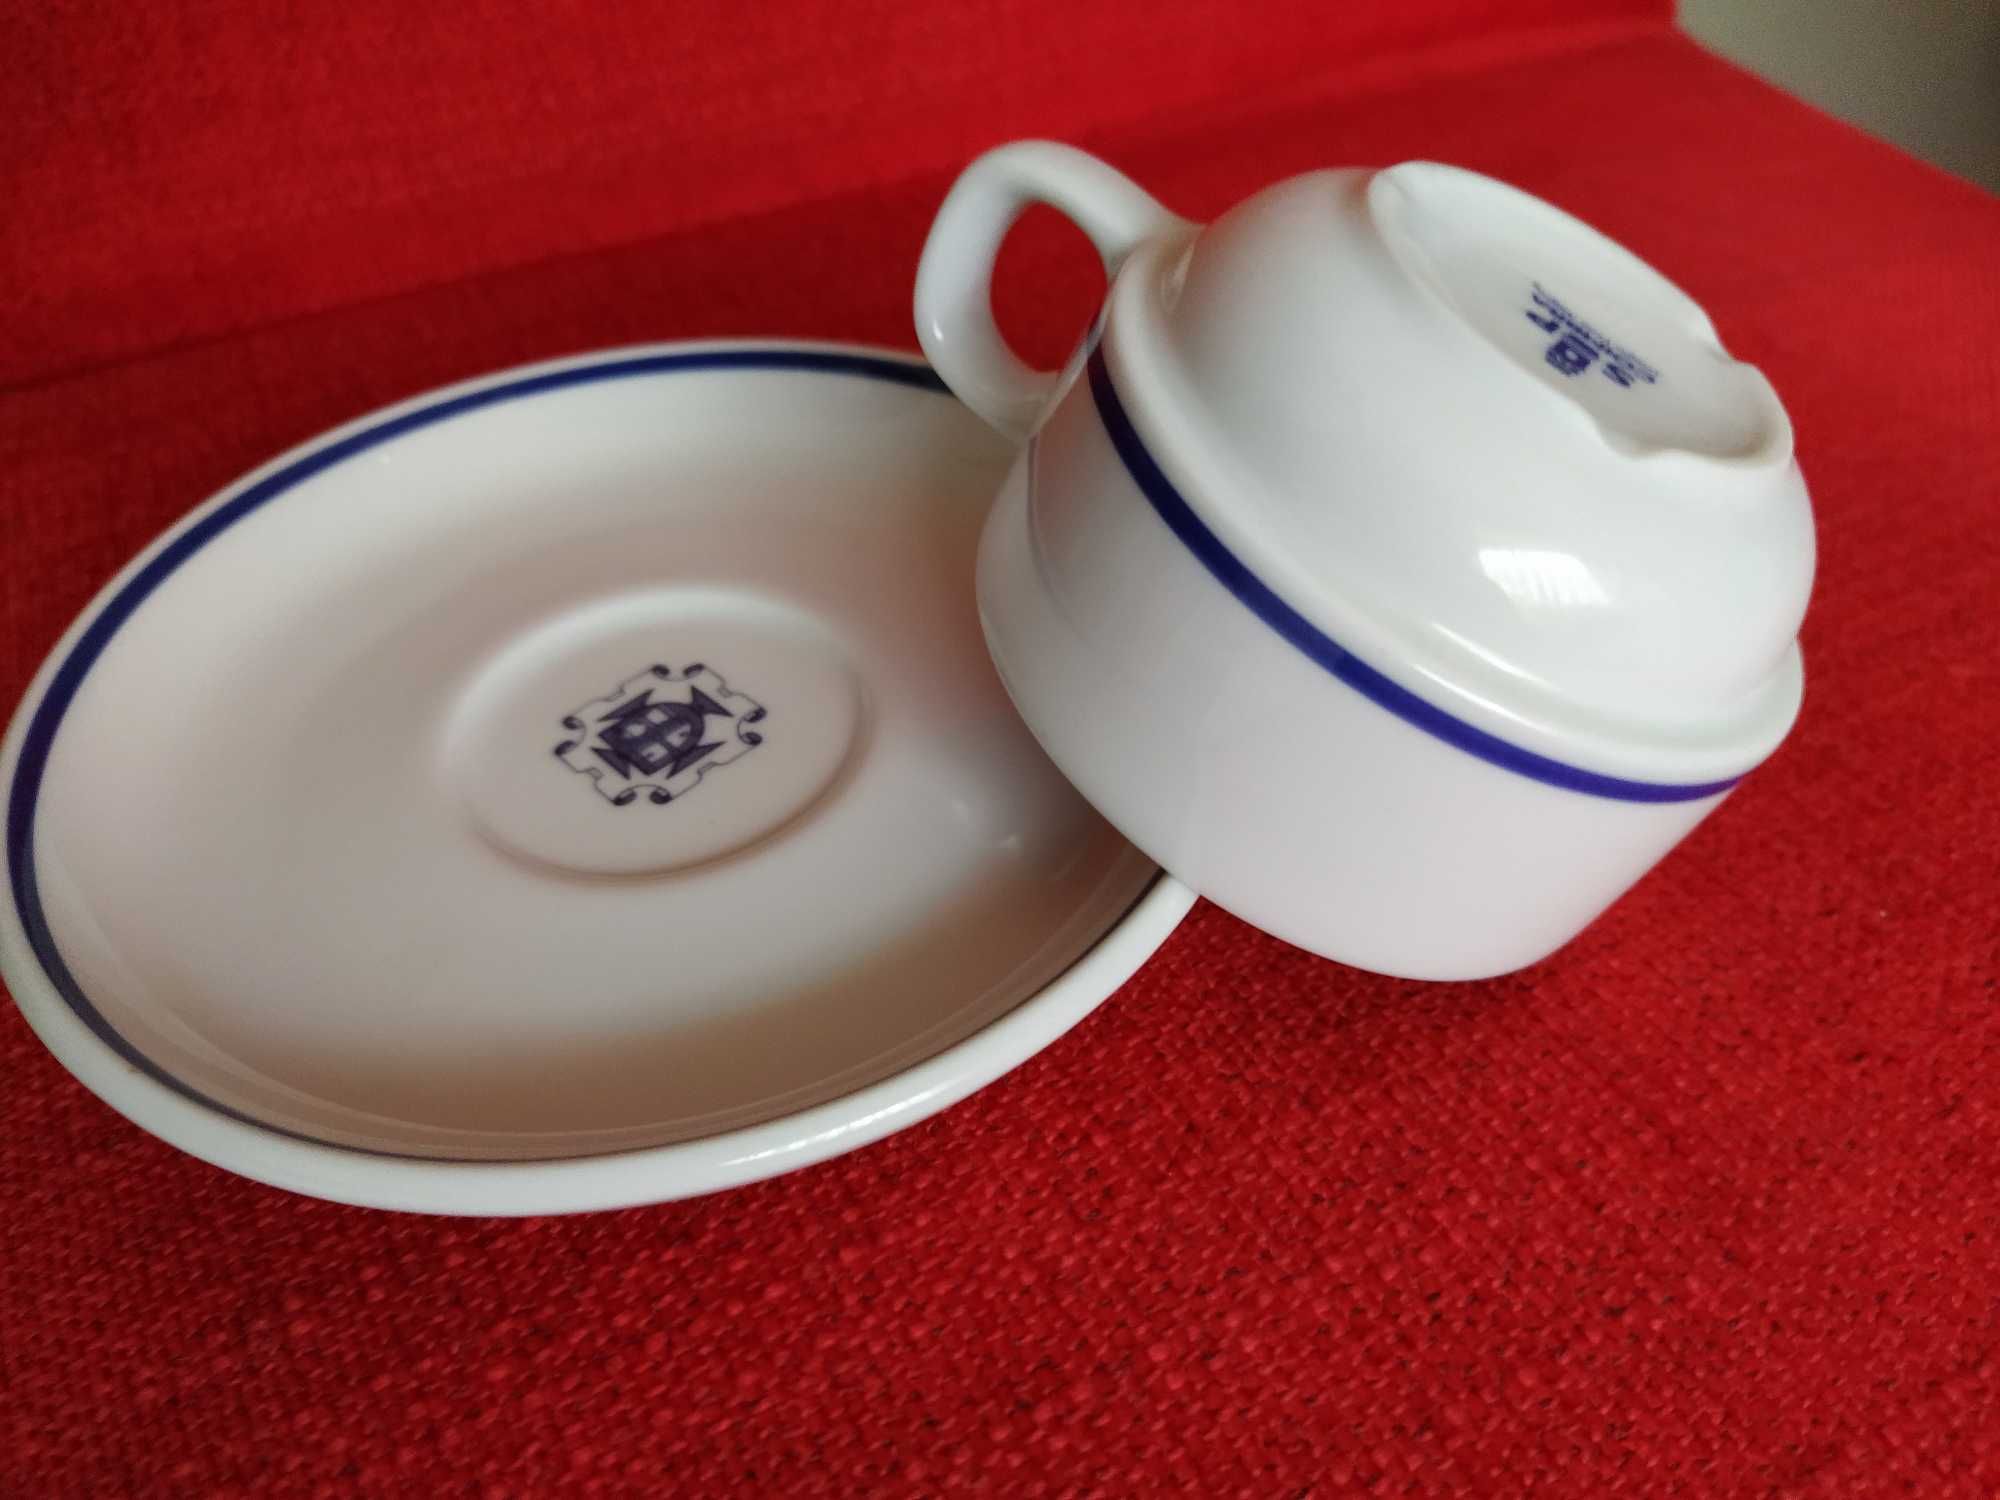 Chávena e pires porcelana SP Coimbra - Vista Alegre